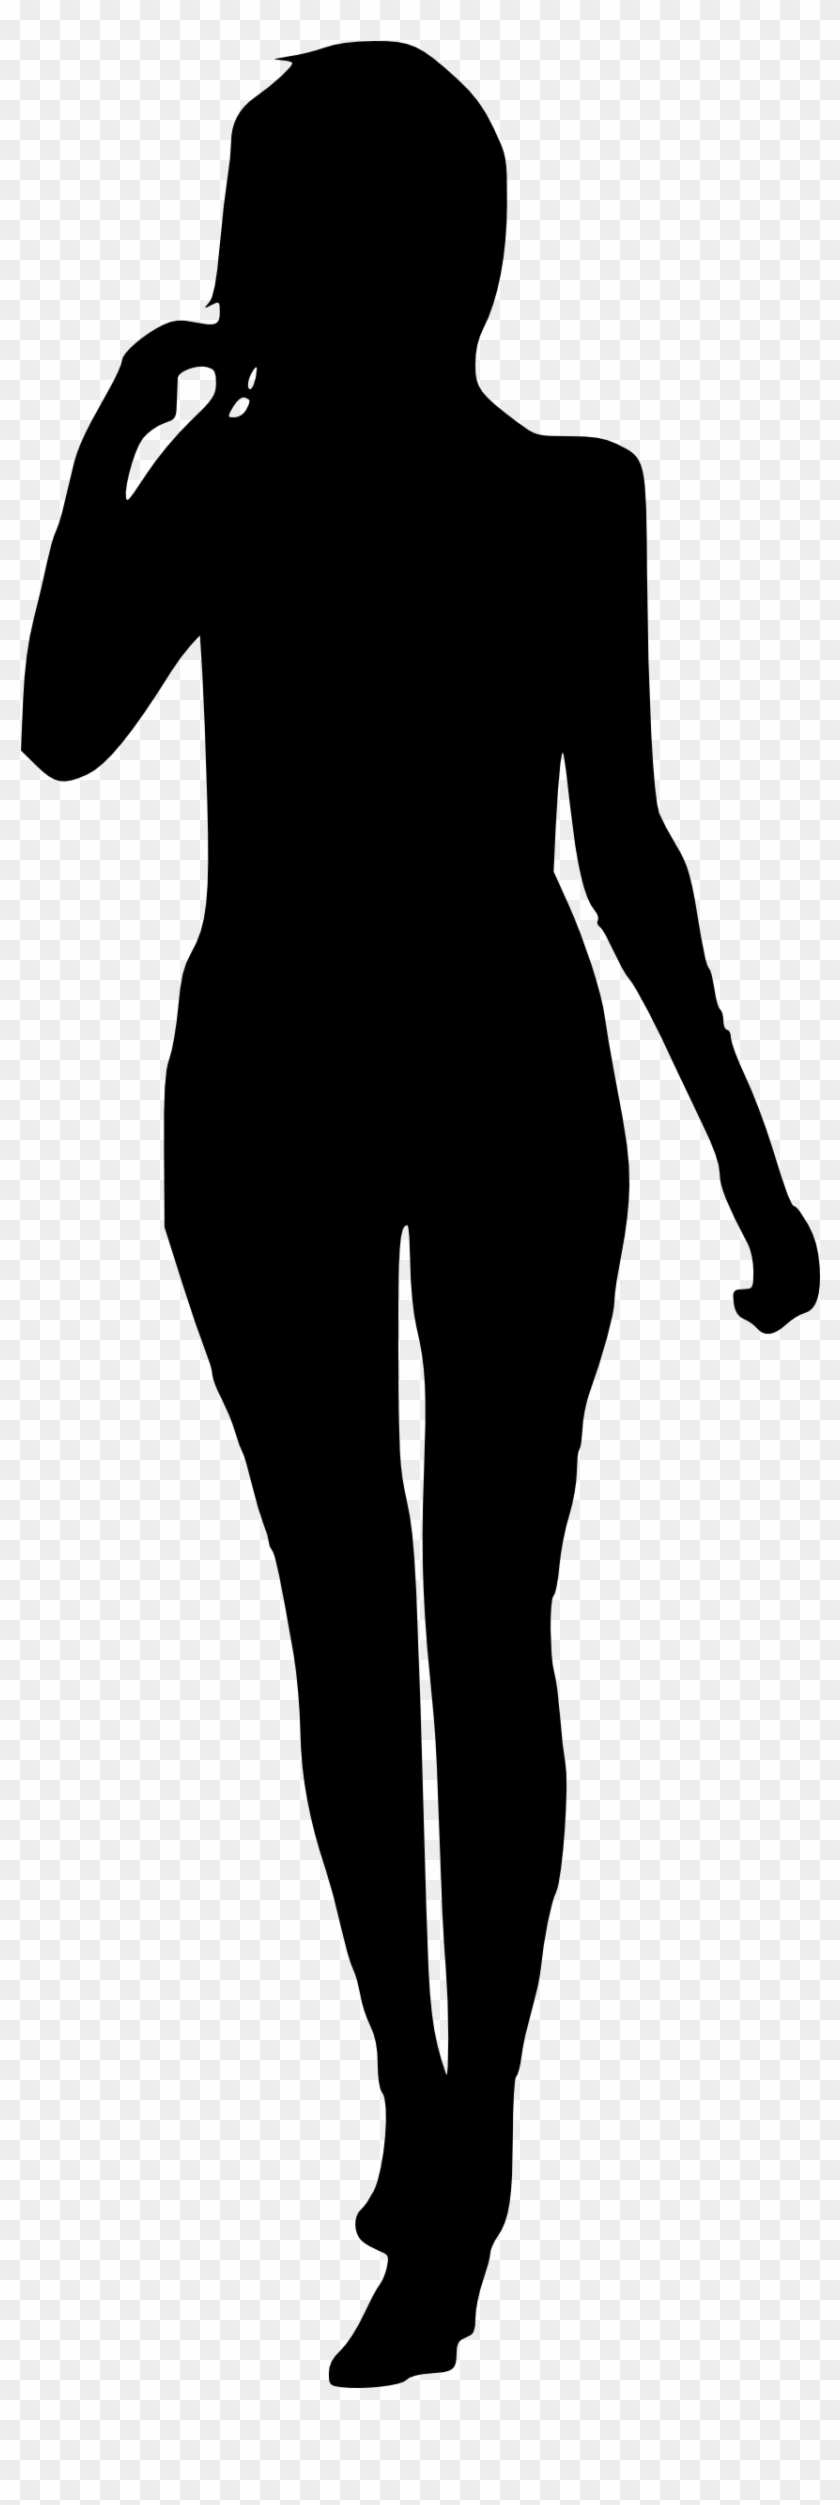 Woman Silhouette Png - Woman Silhouette Png #368383